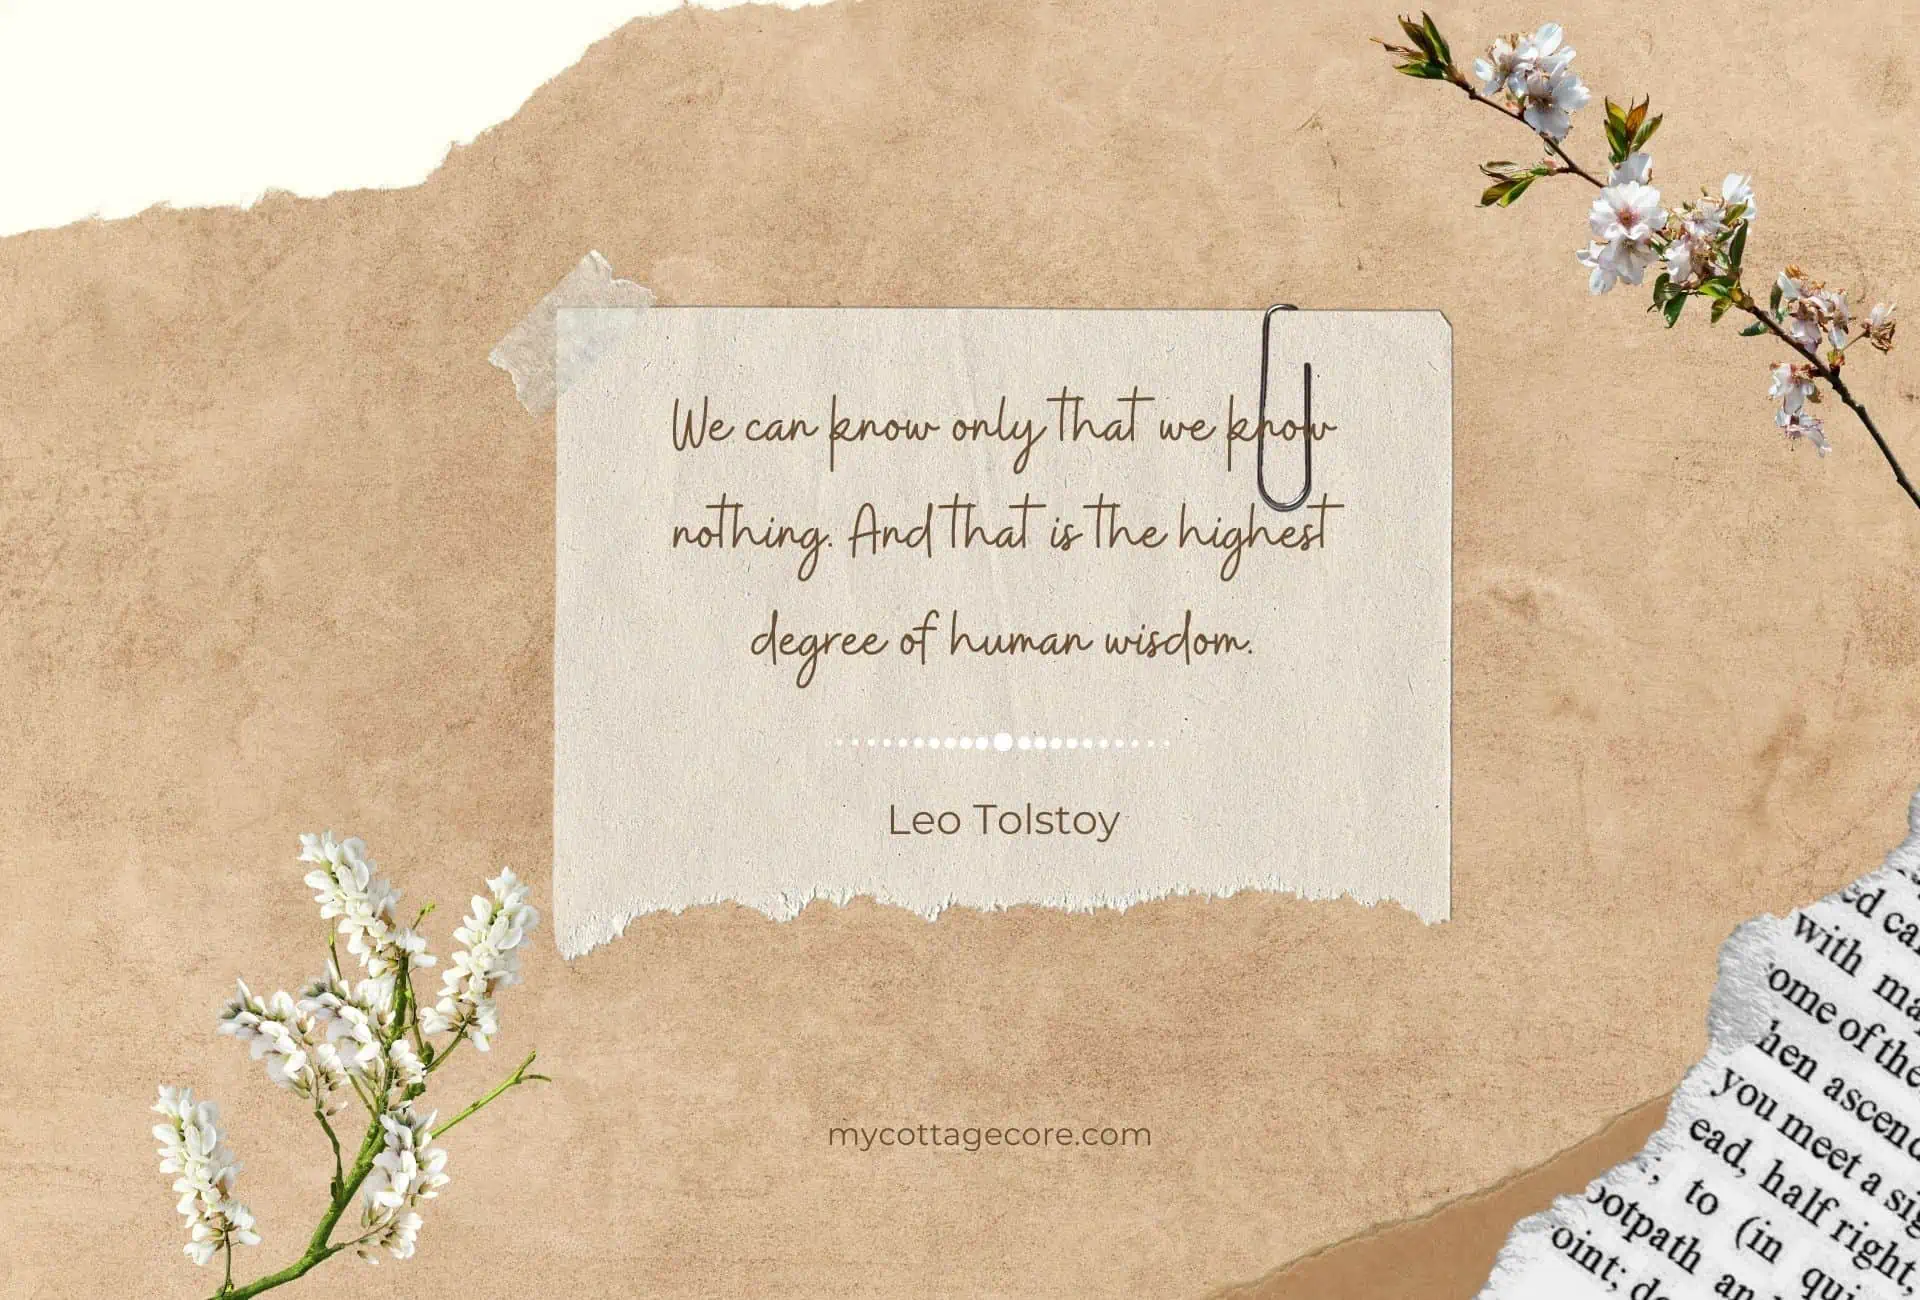 Dark academia quote by Leo Tolstoy.